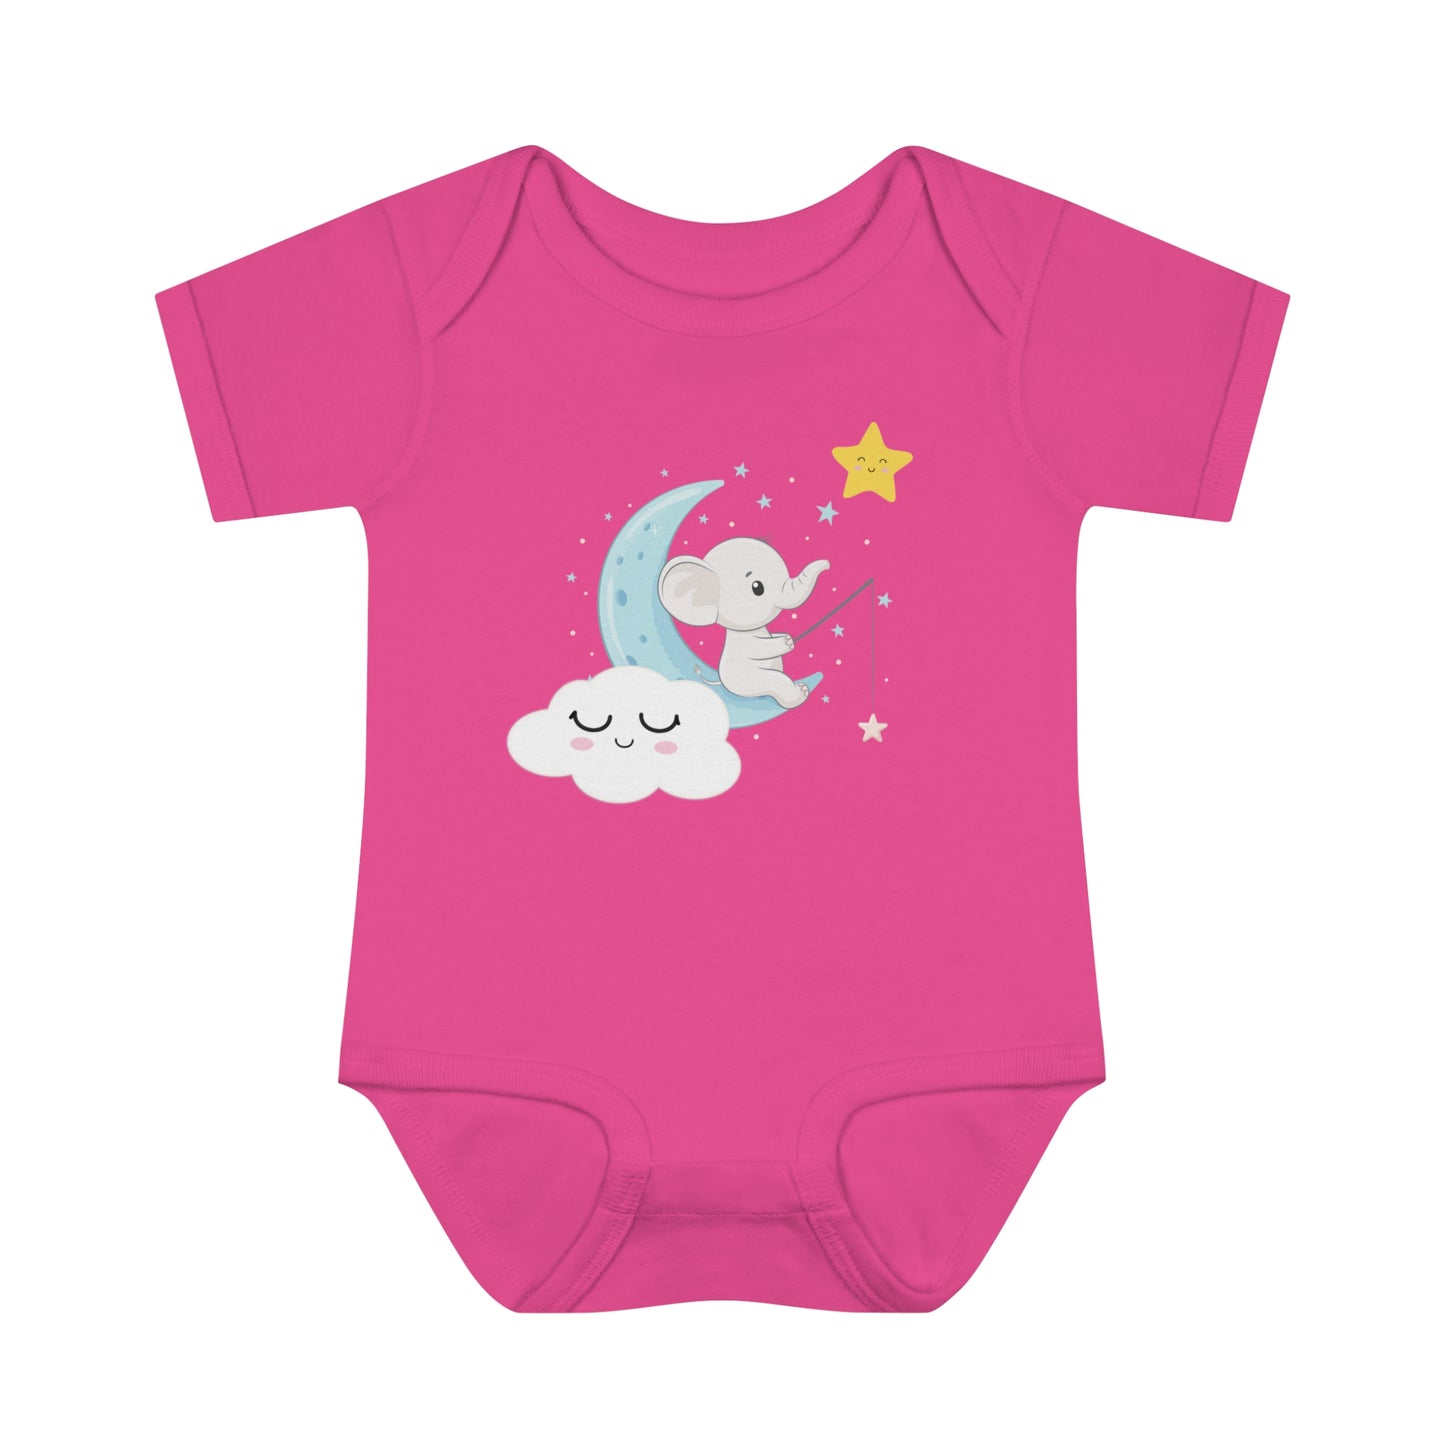 Infant Baby Rib Bodysuit - Baby elephant - 05